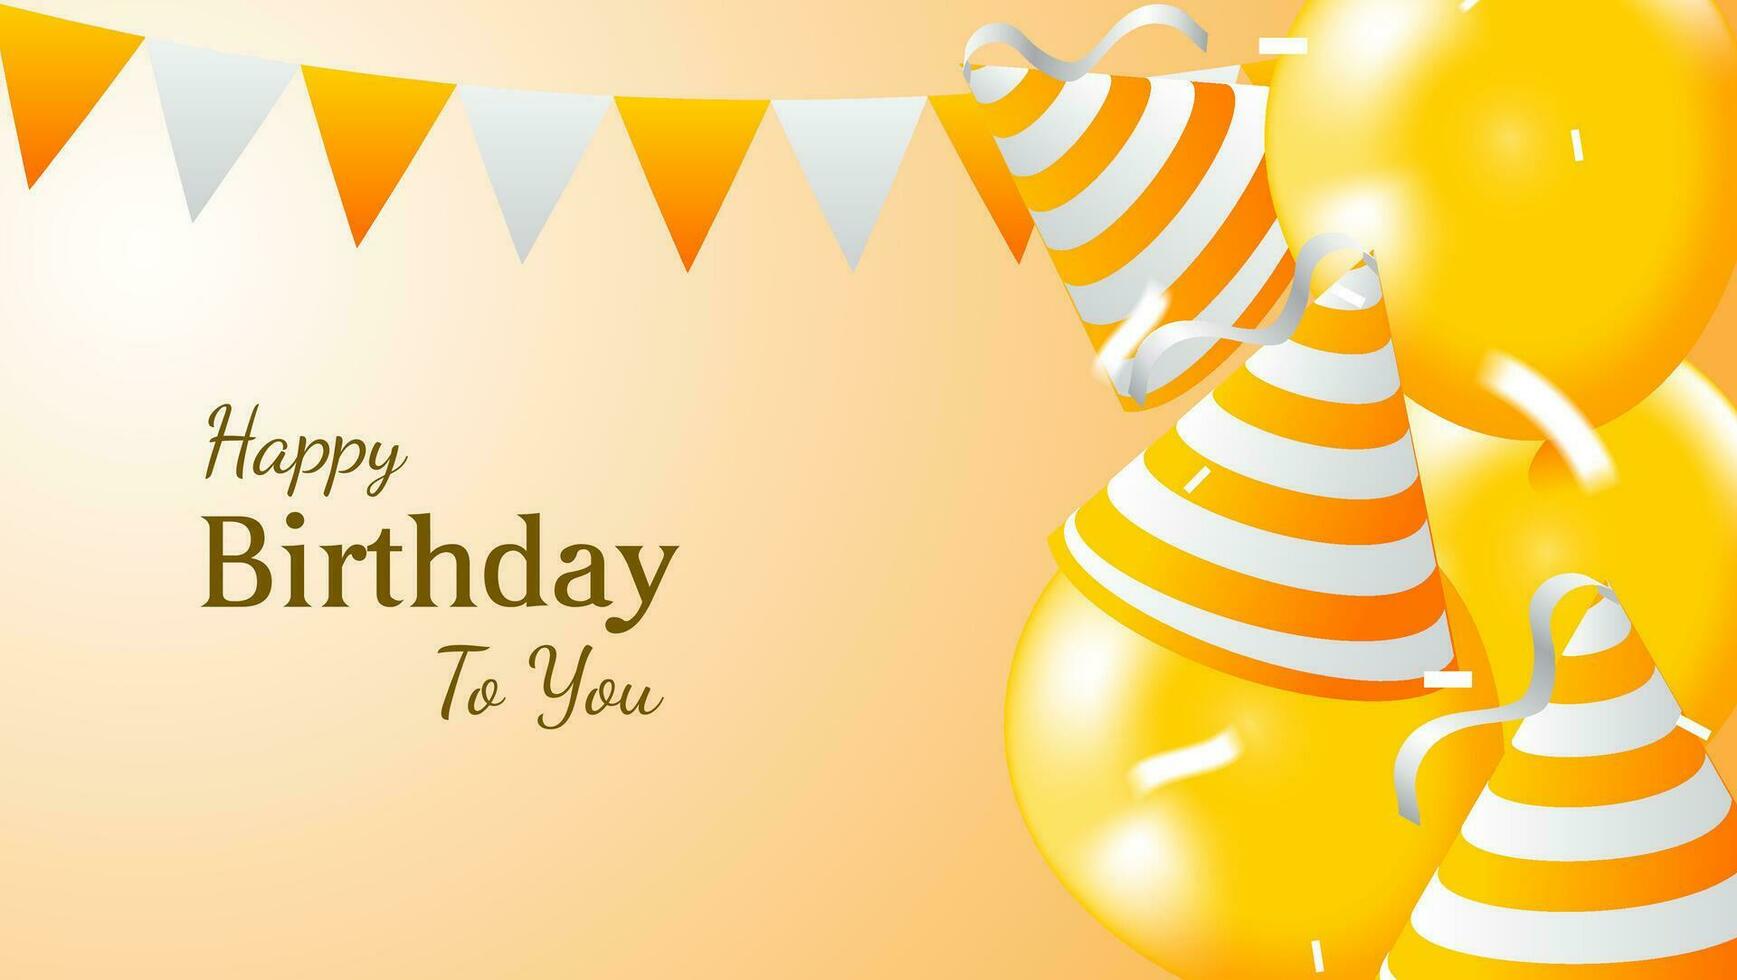 Geburtstag Gruß Karte Design mit Ballon, Geburtstag Hut und Konfetti Dekoration im Orange und Weiß Farbe vektor